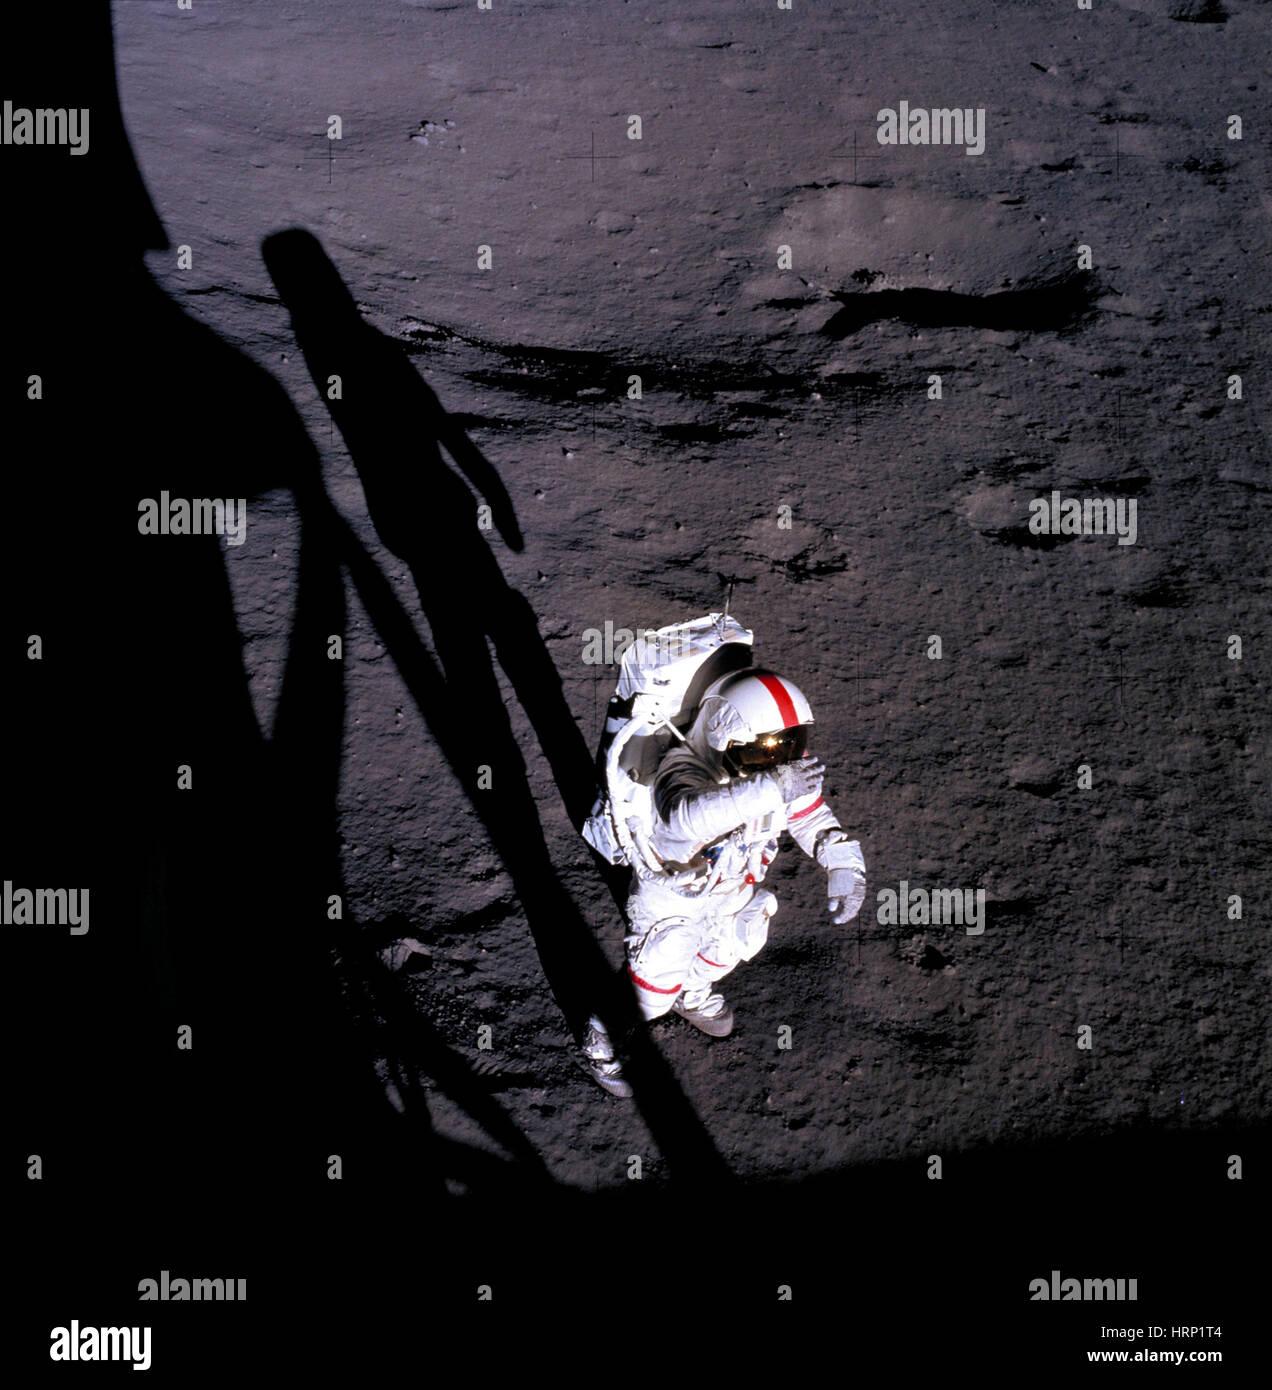 Alan Shepard on the Moon, Apollo 14 Stock Photo